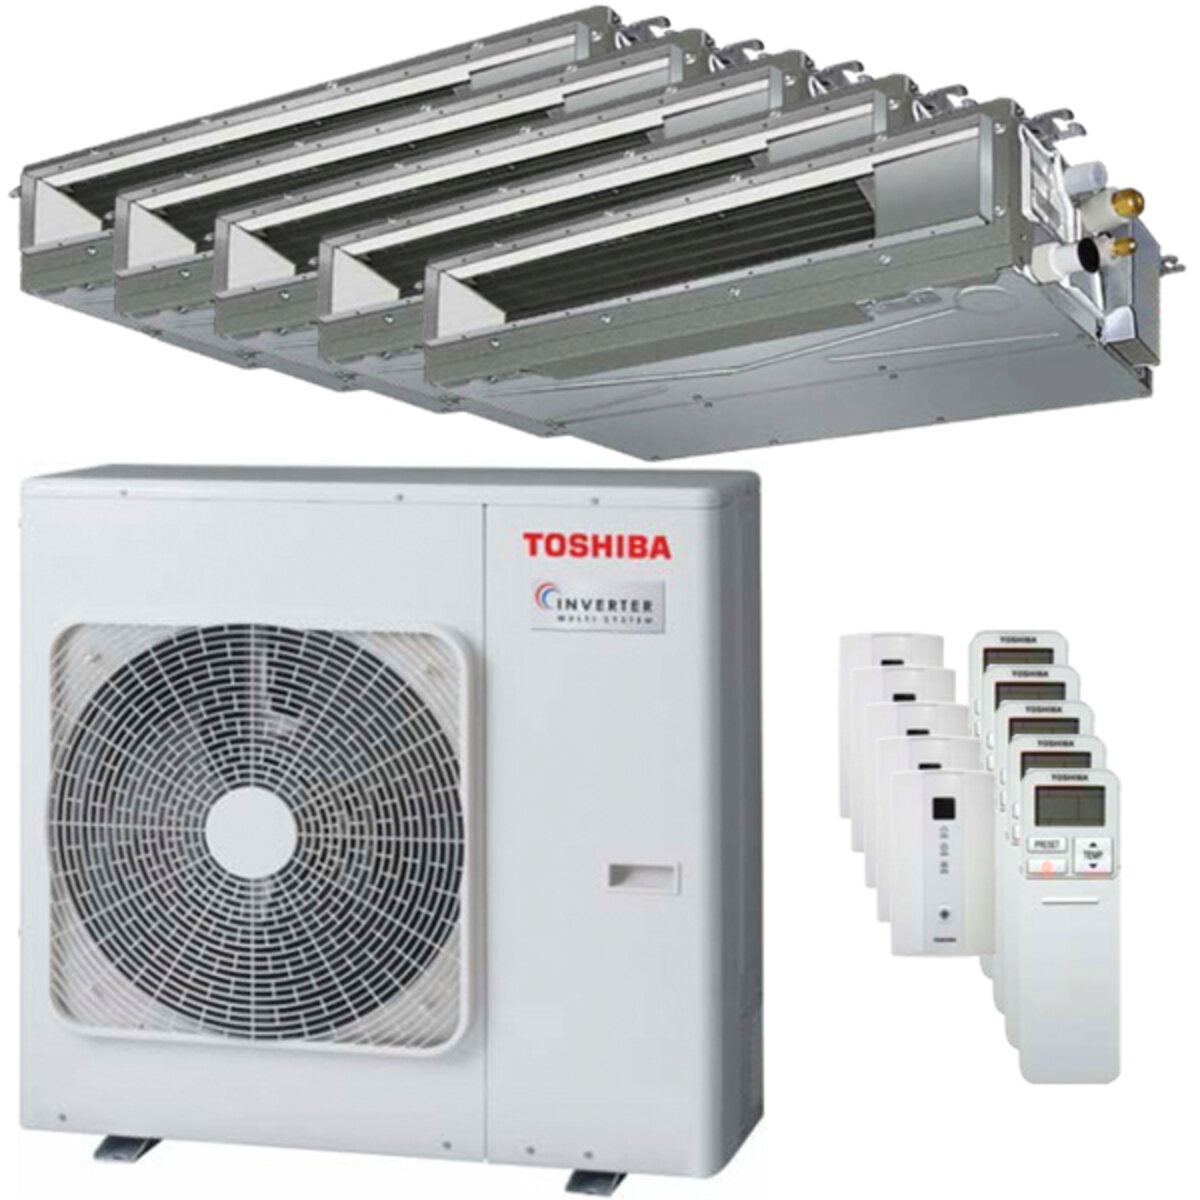 Toshiba Ductable U2 Klimaanlage Penta Split 9000 + 9000 + 12000 + 12000 + 12000 BTU Inverter A++ Außengerät 10,0 kW